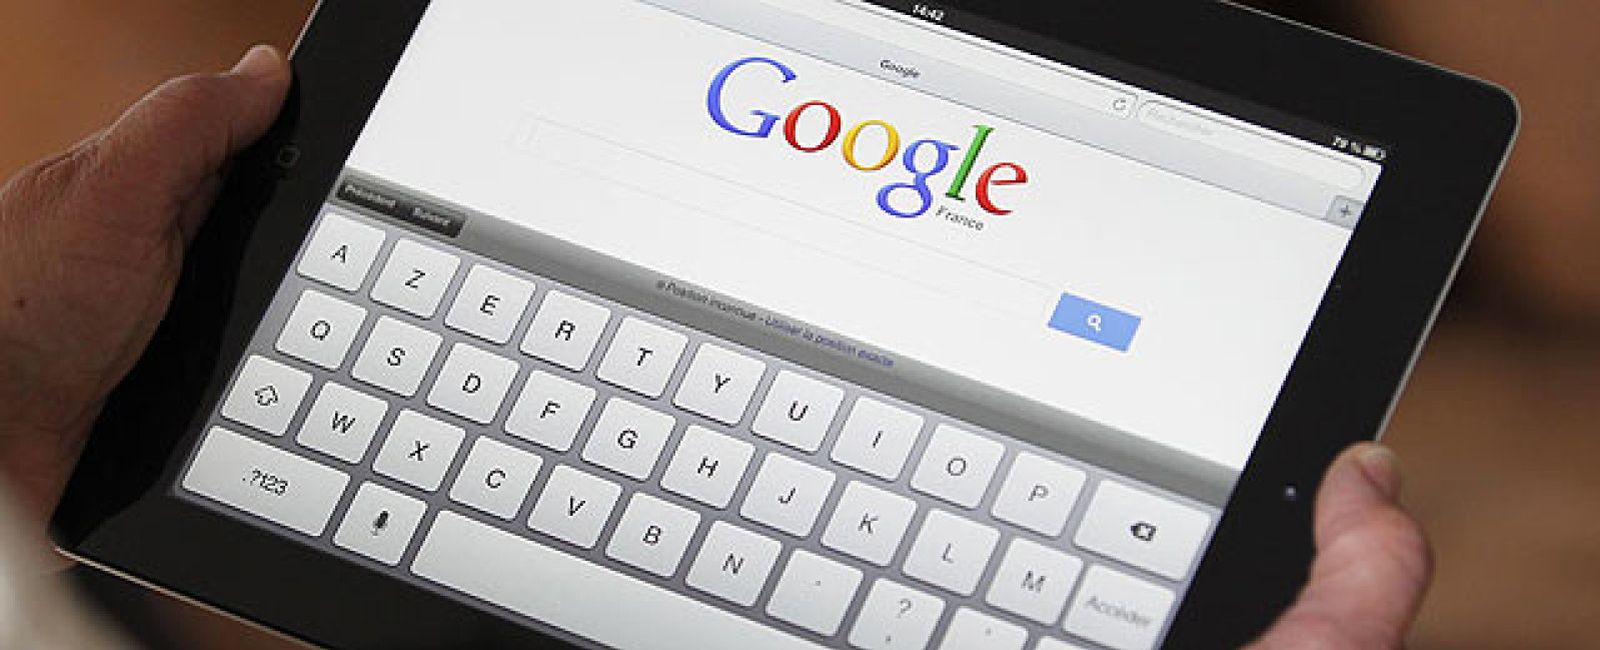 Foto: Google sostiene que consumimos información "diferente" a 2005